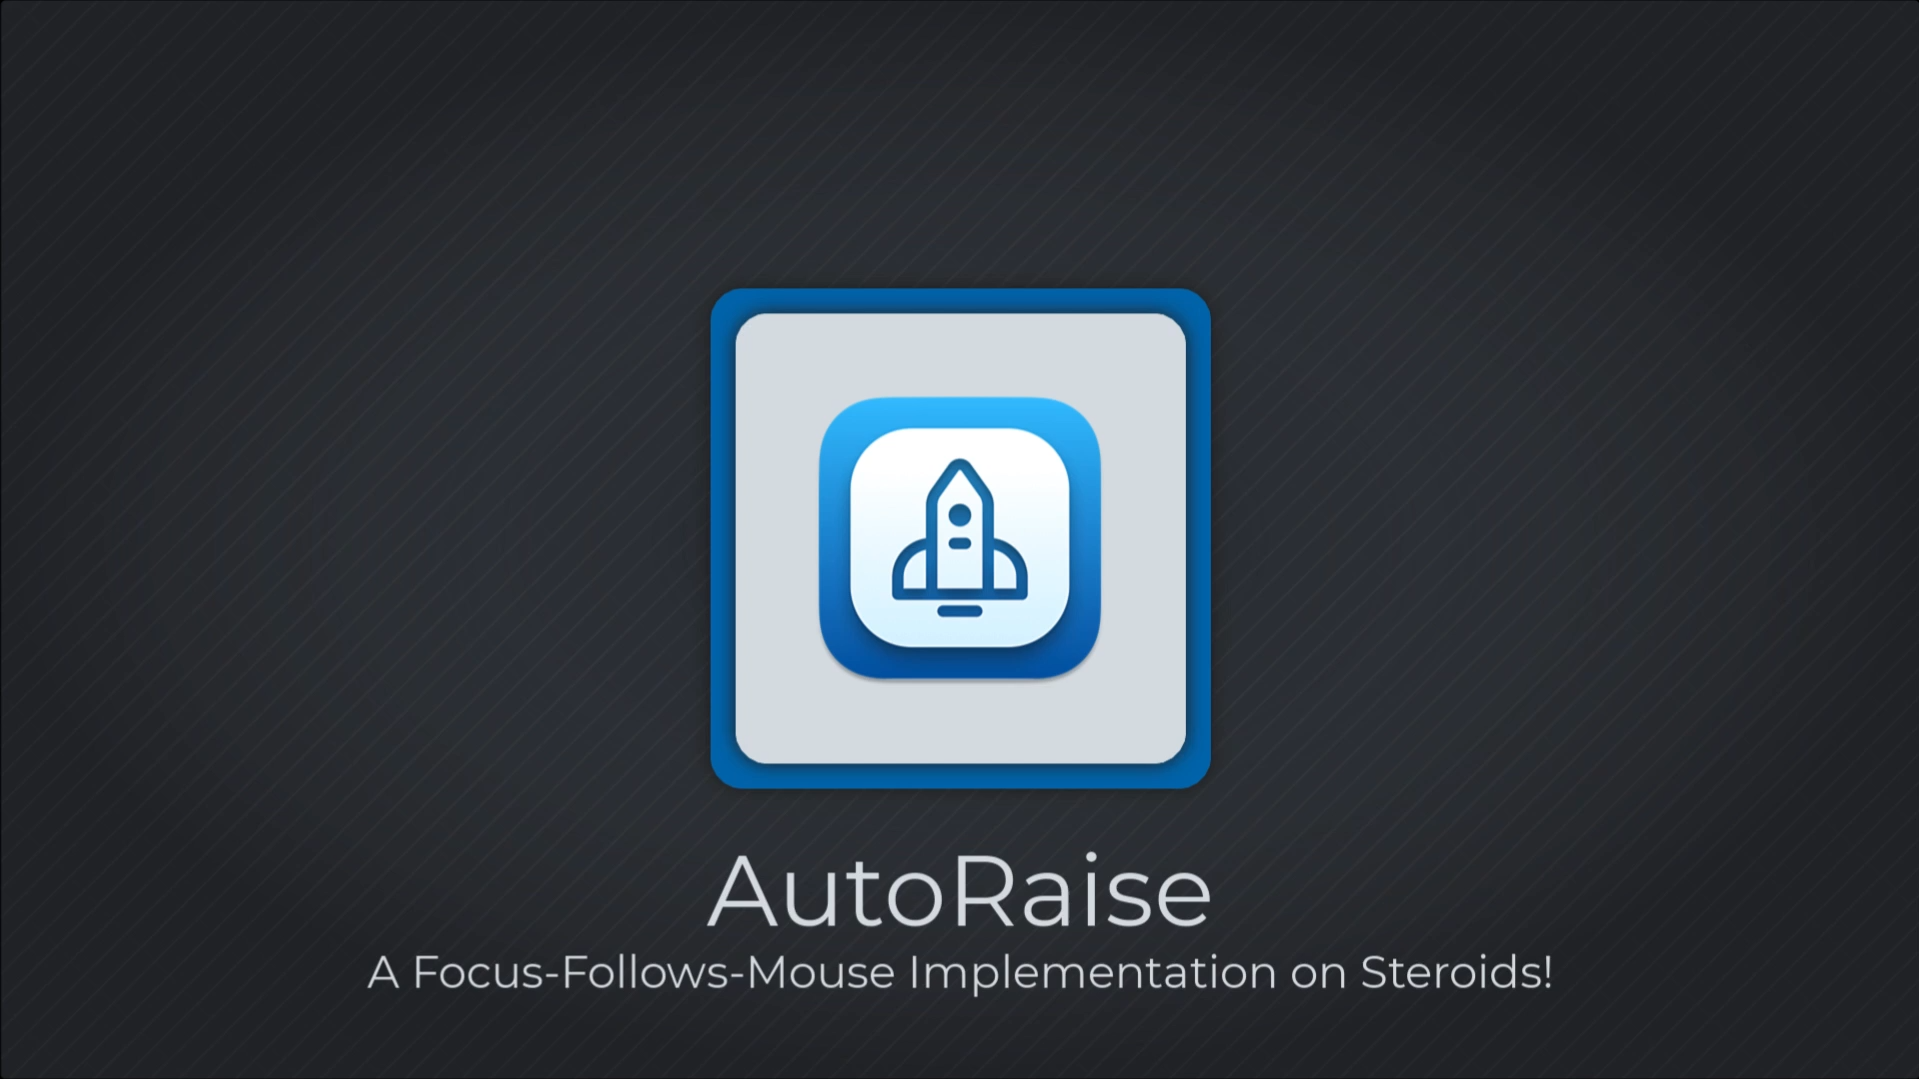 Приложения: AutoRise избавит от лишних кликов мышью